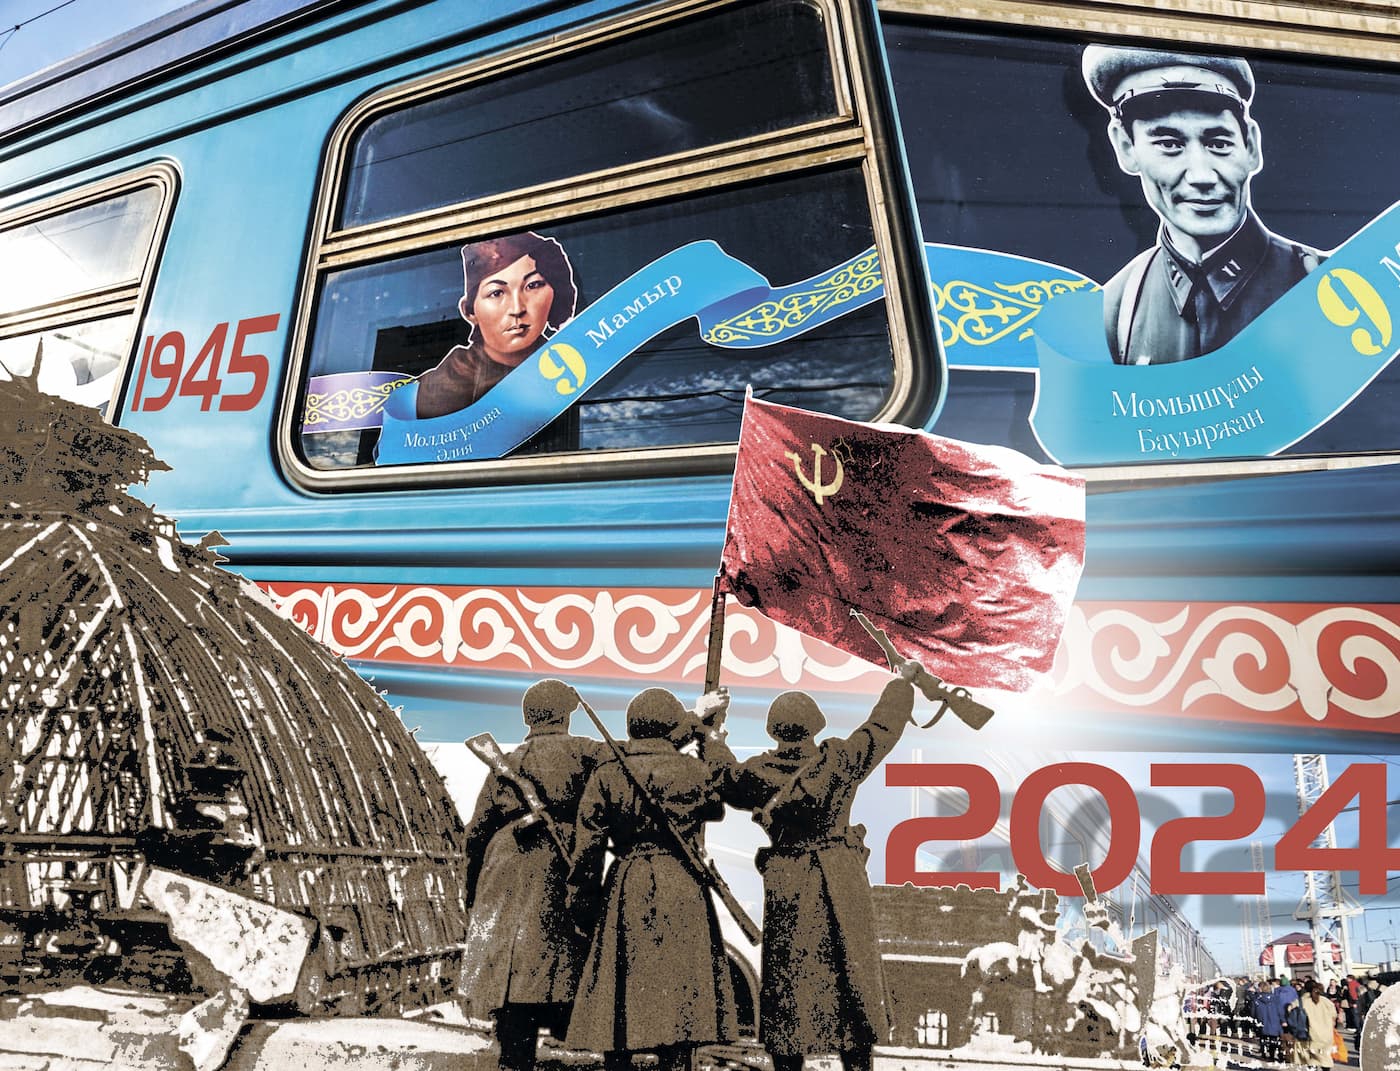 В преддверии 9 Мая из Астаны в Павлодар отправился в путь специально оформленный к празднованию Победы в Великой Отечественной войне электропоезд No 7502 